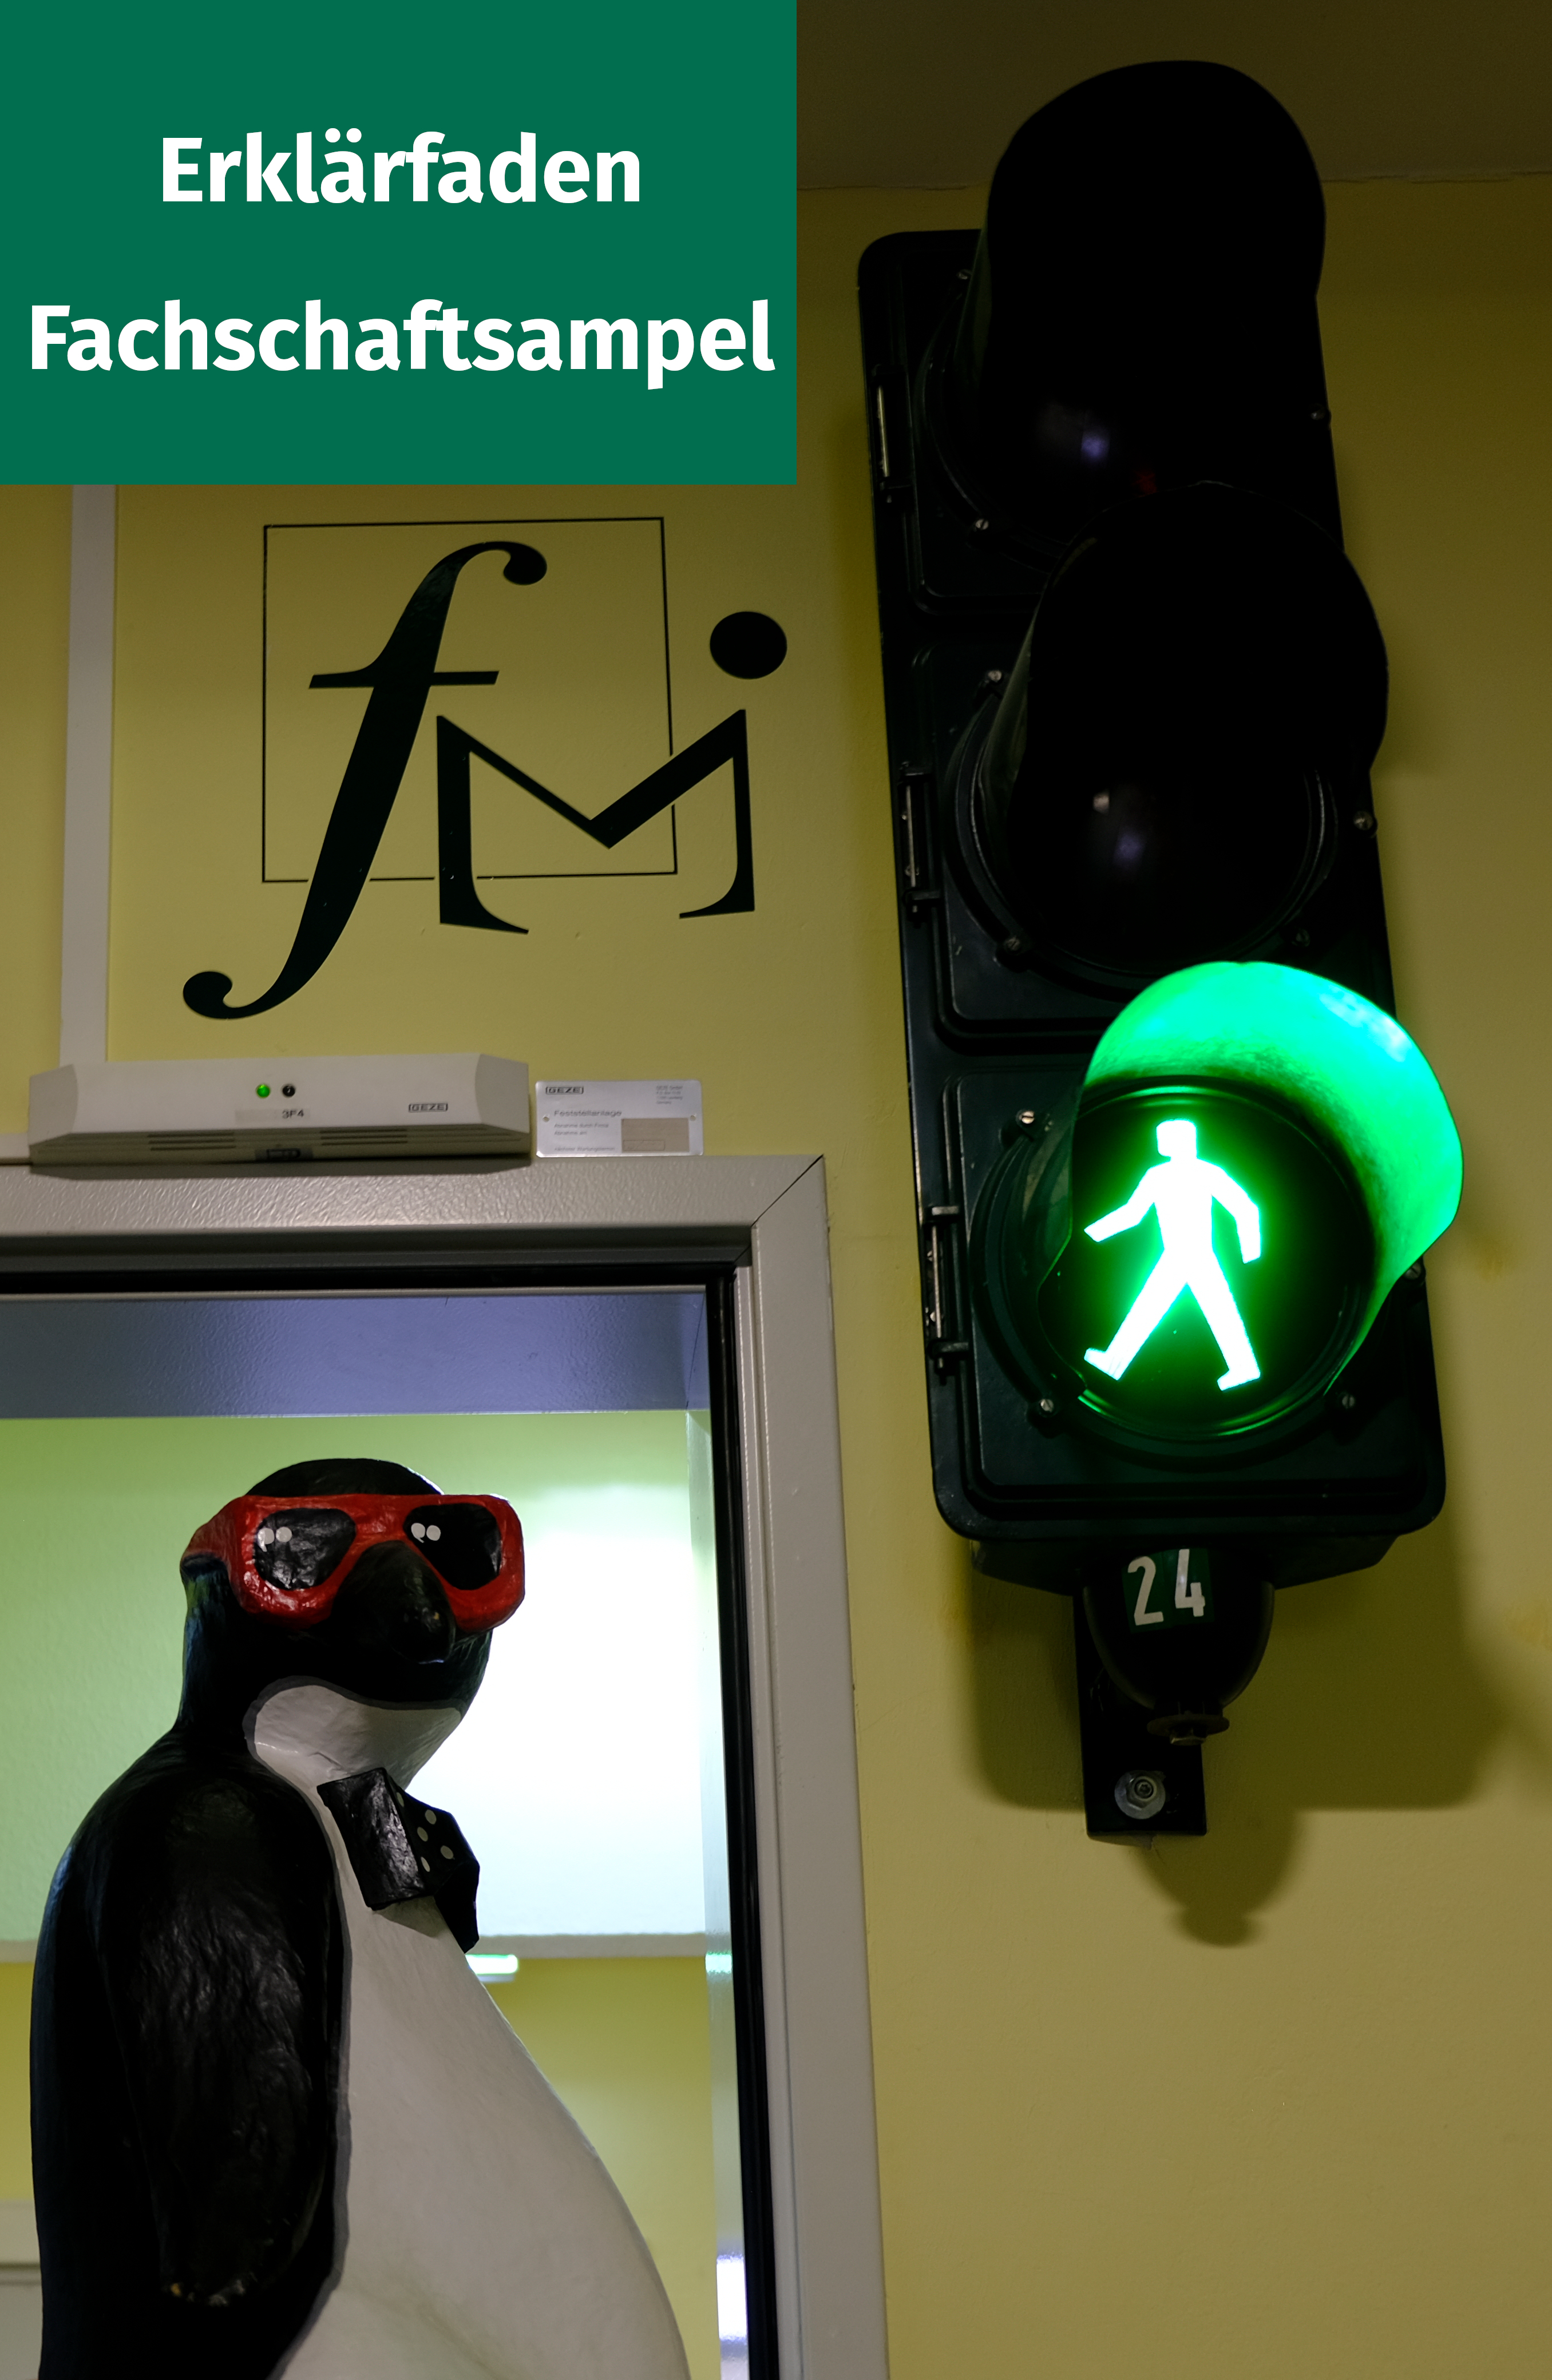 Mascot Kai next to the green light.